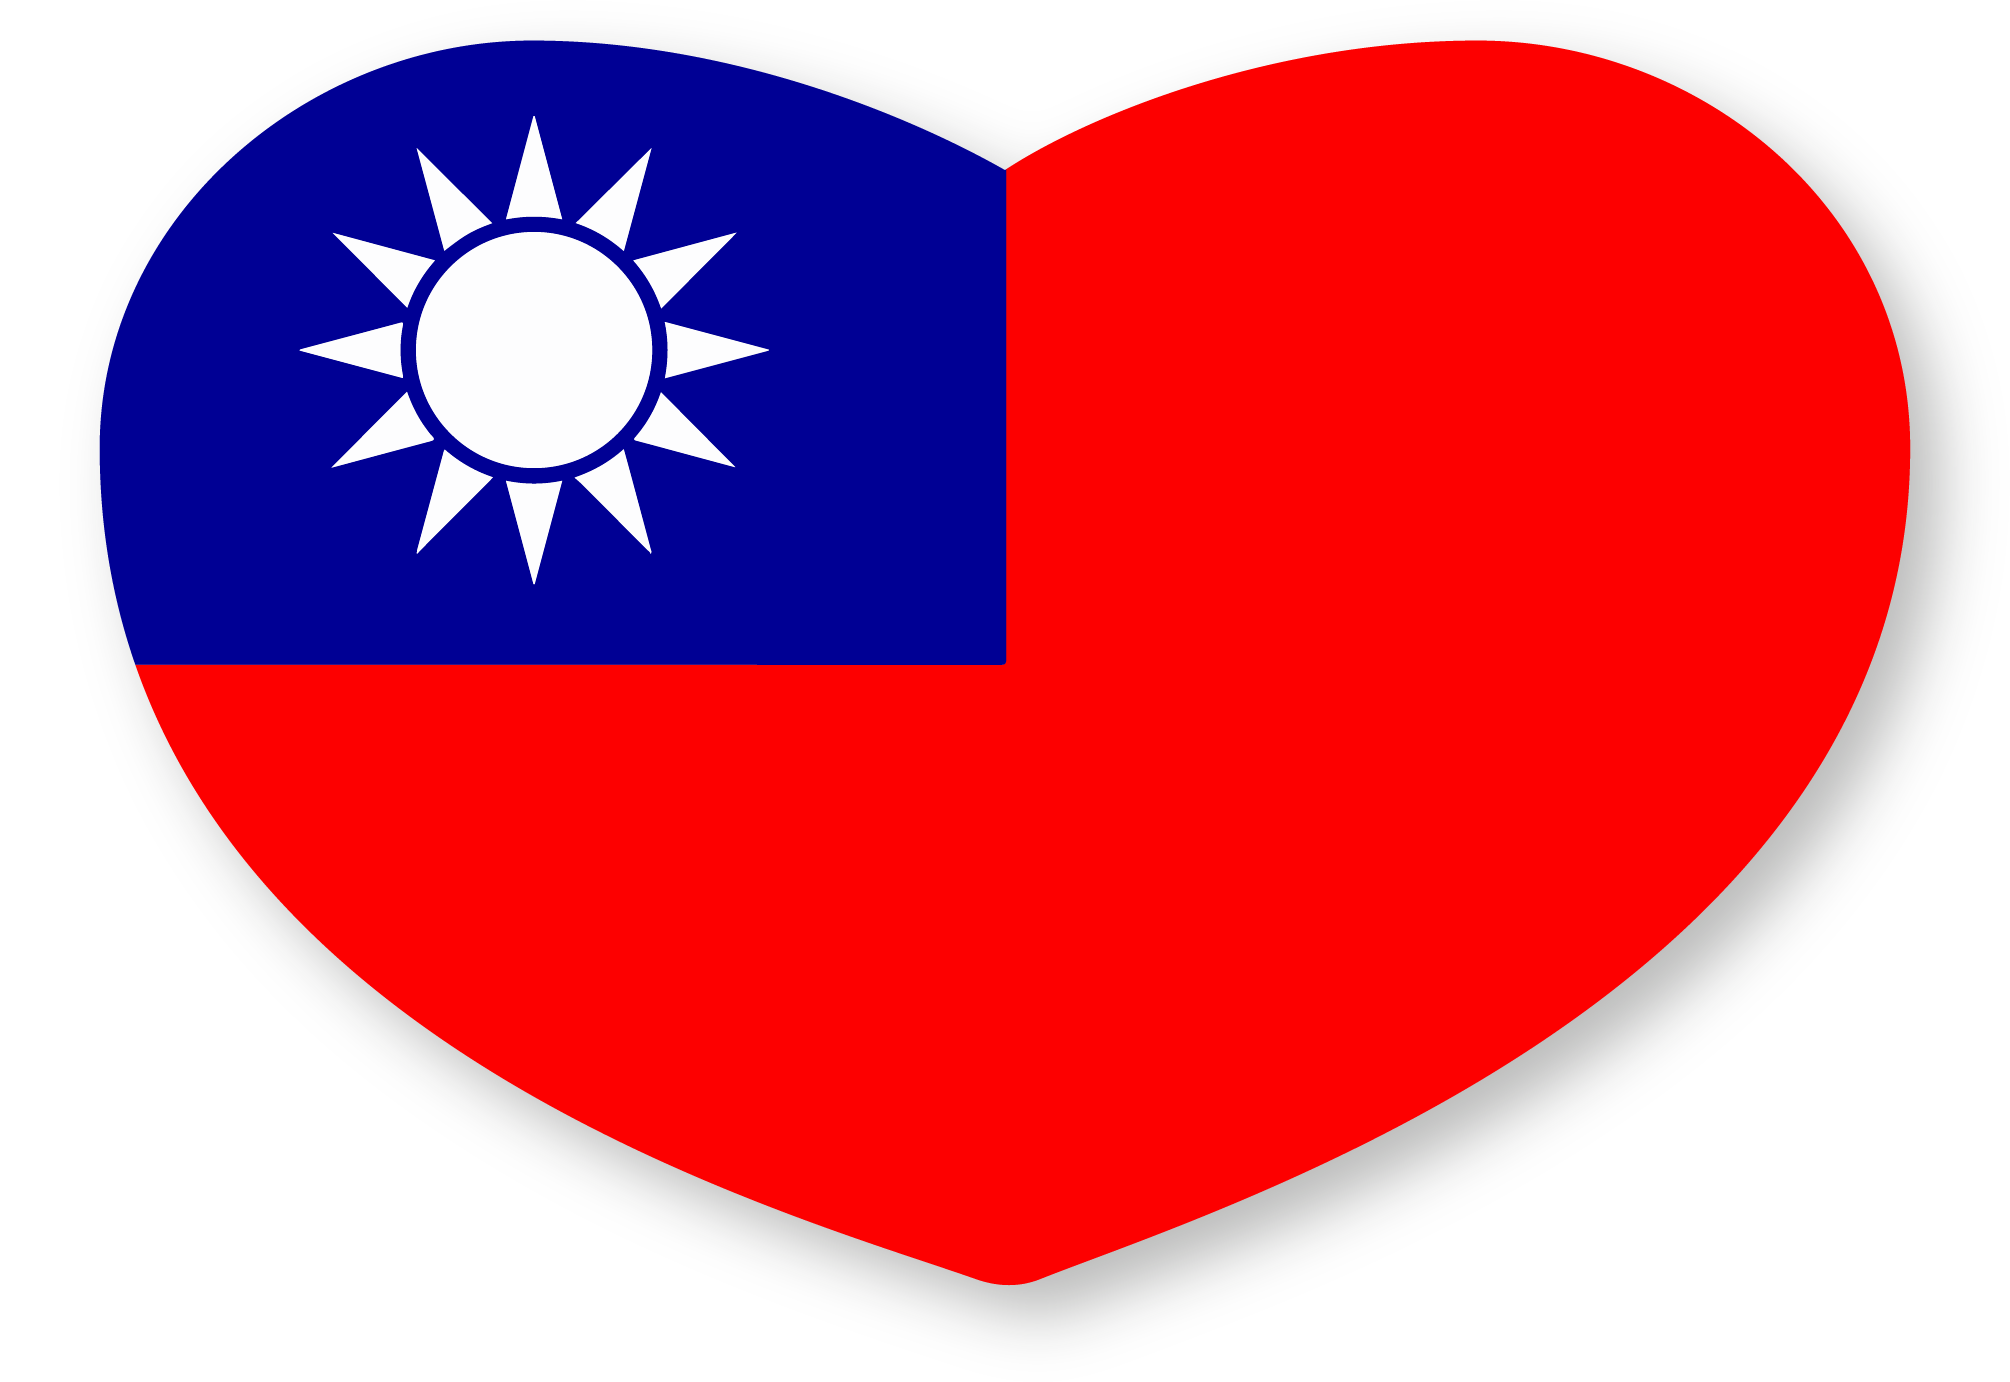 Taiwan (China) flag